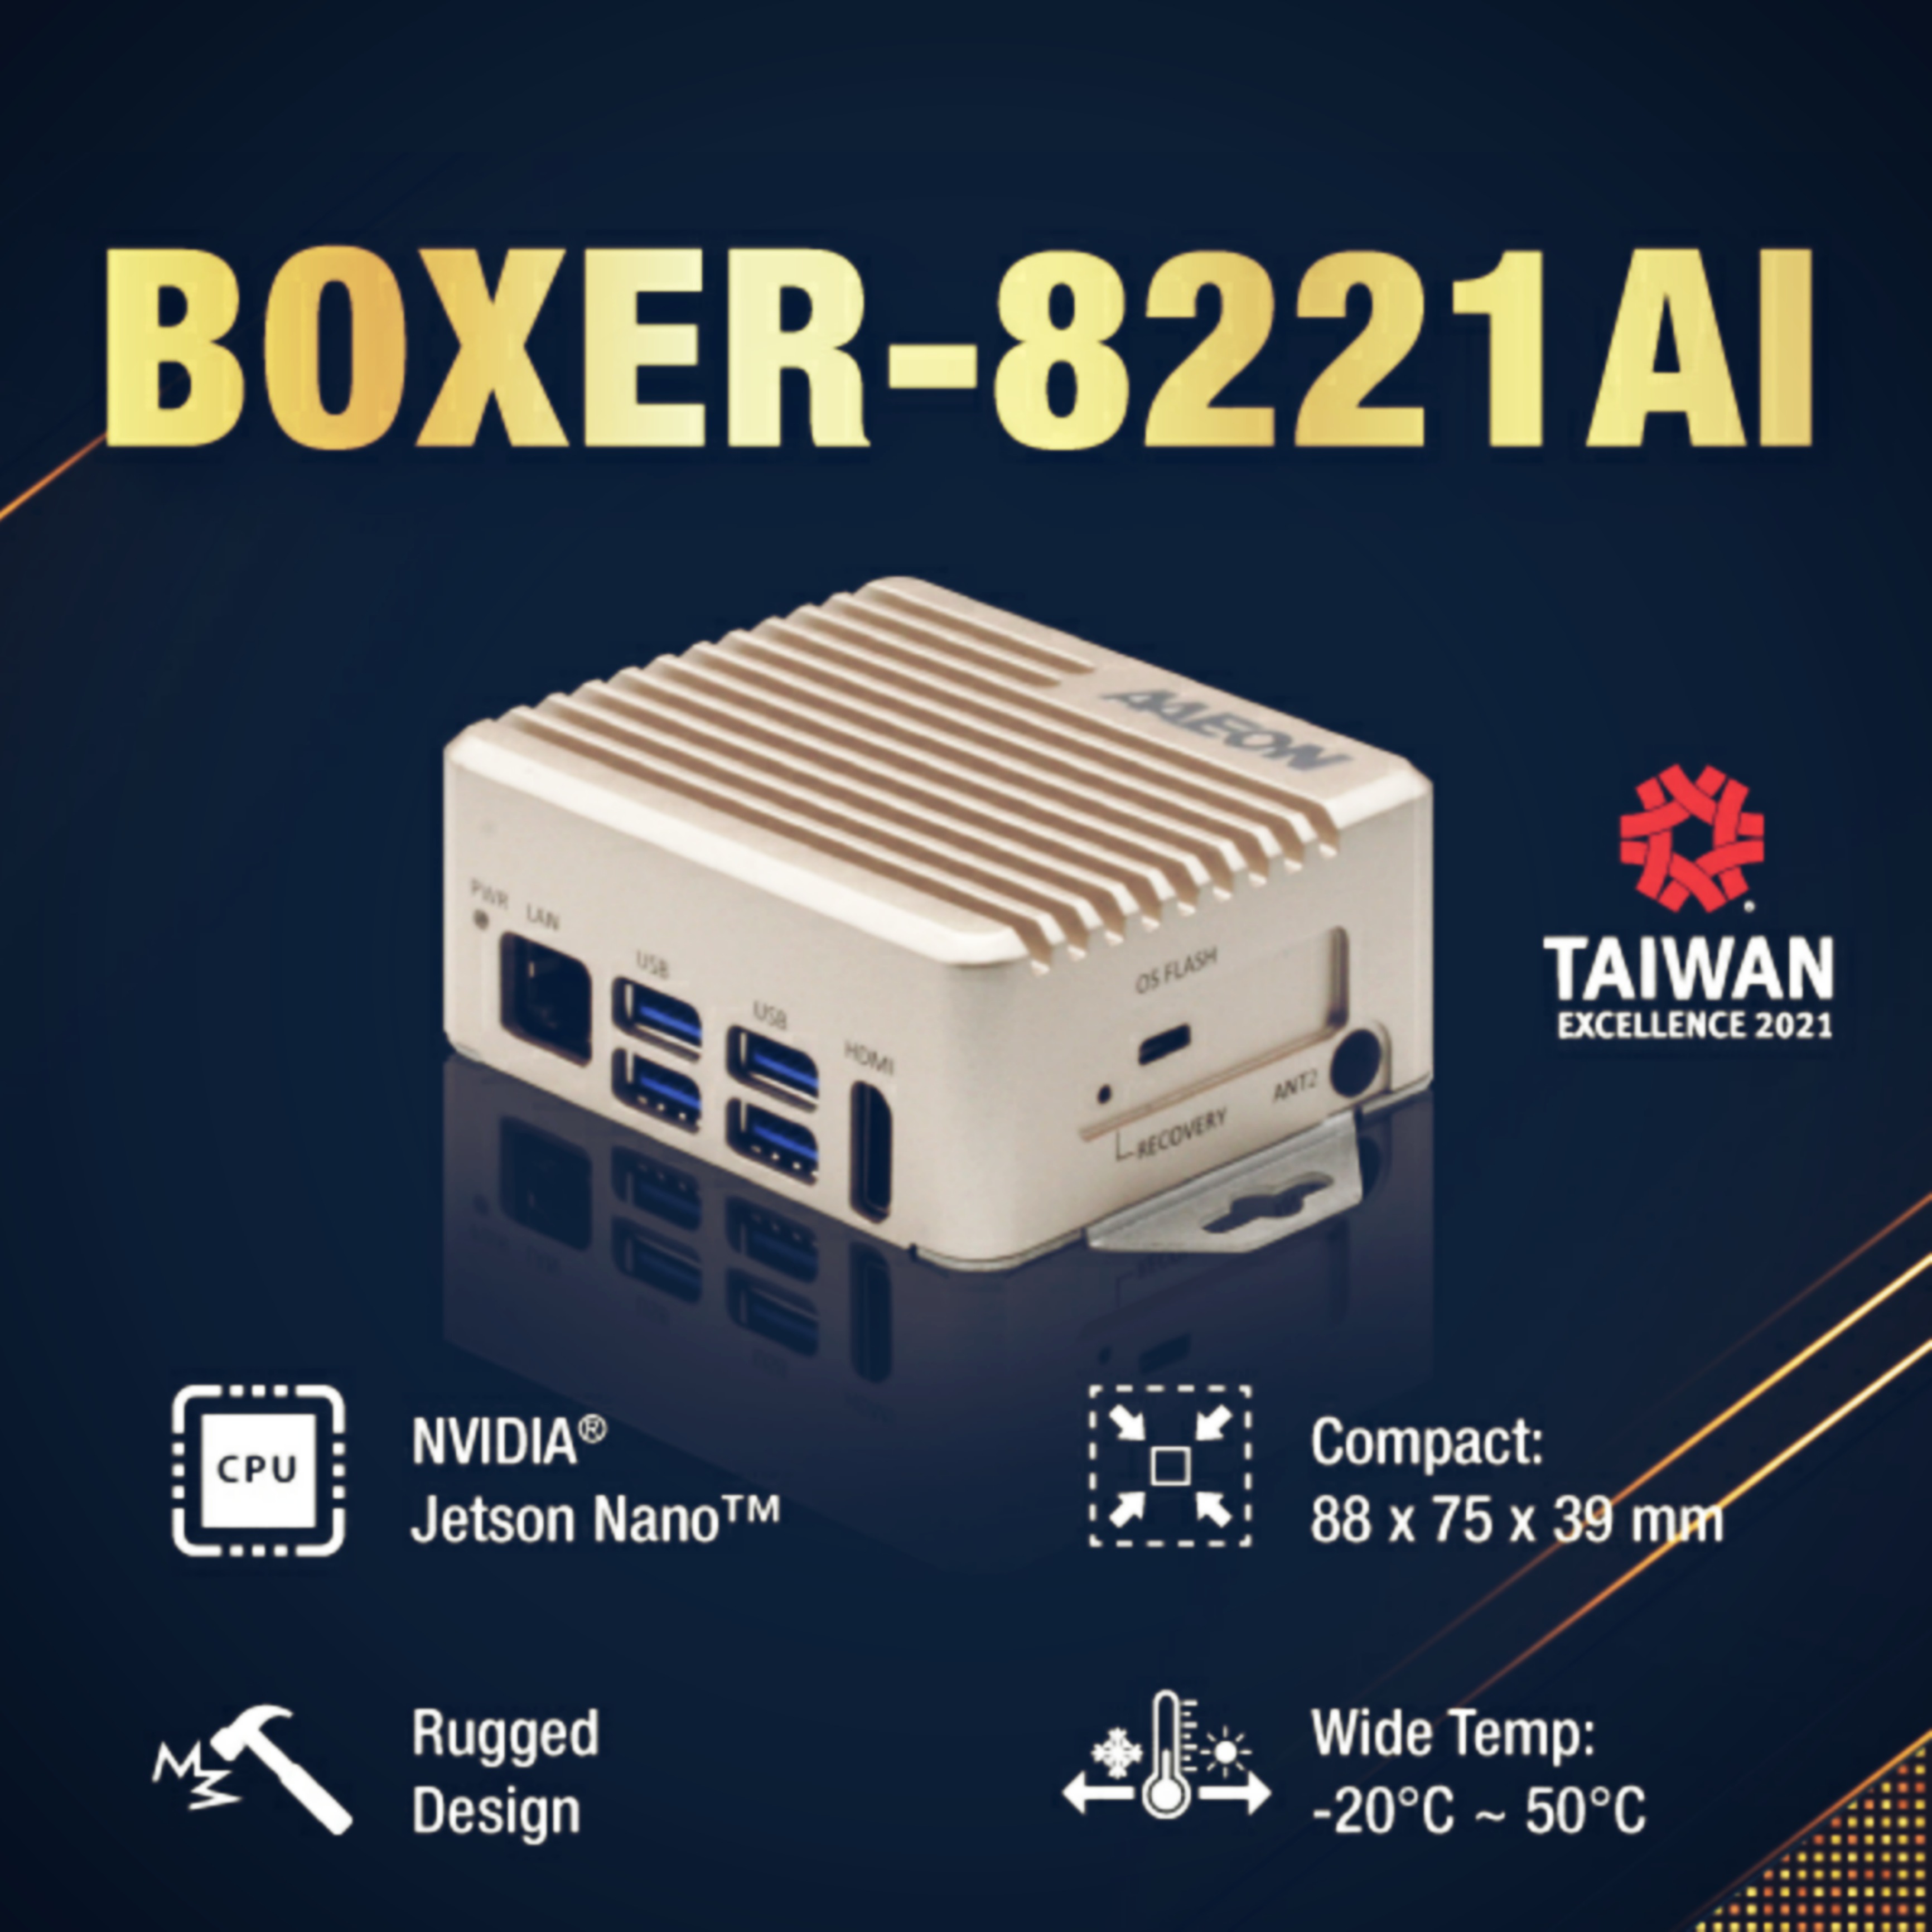 Компактный промышленный компьютер BOXER-8221AI от Aaeon